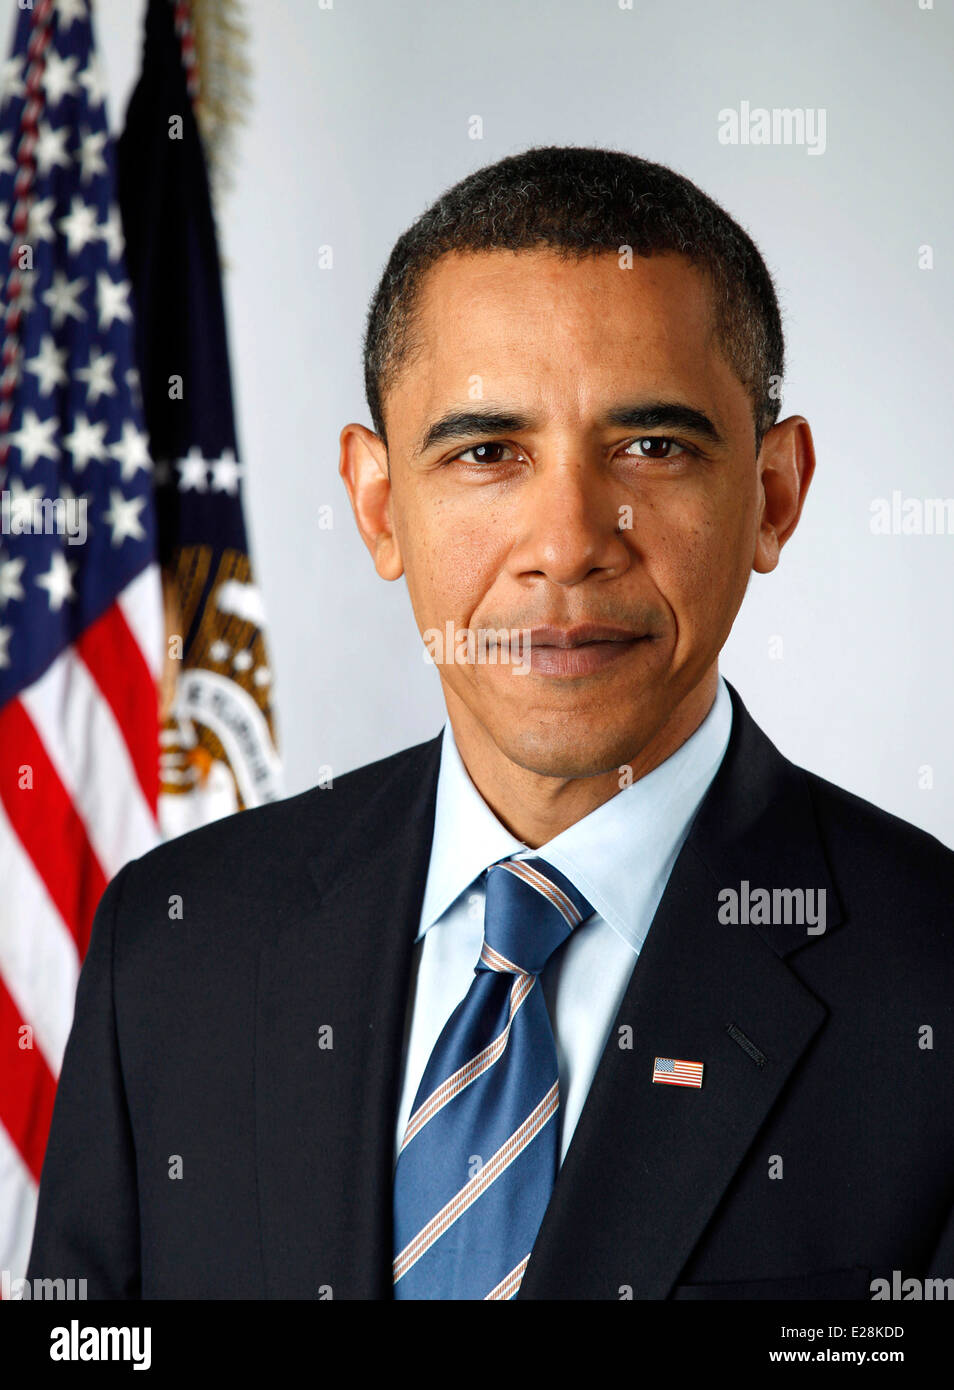 Le président Barack Obama, 44e président des États-Unis Banque D'Images